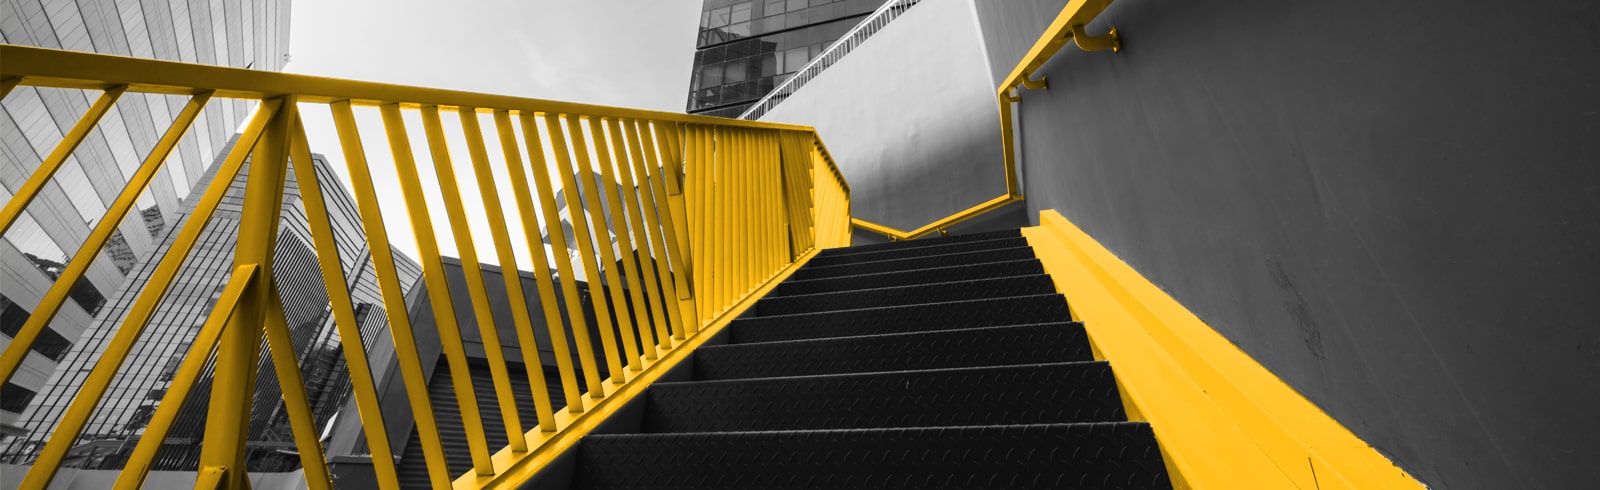 Yellow hand rails stairs